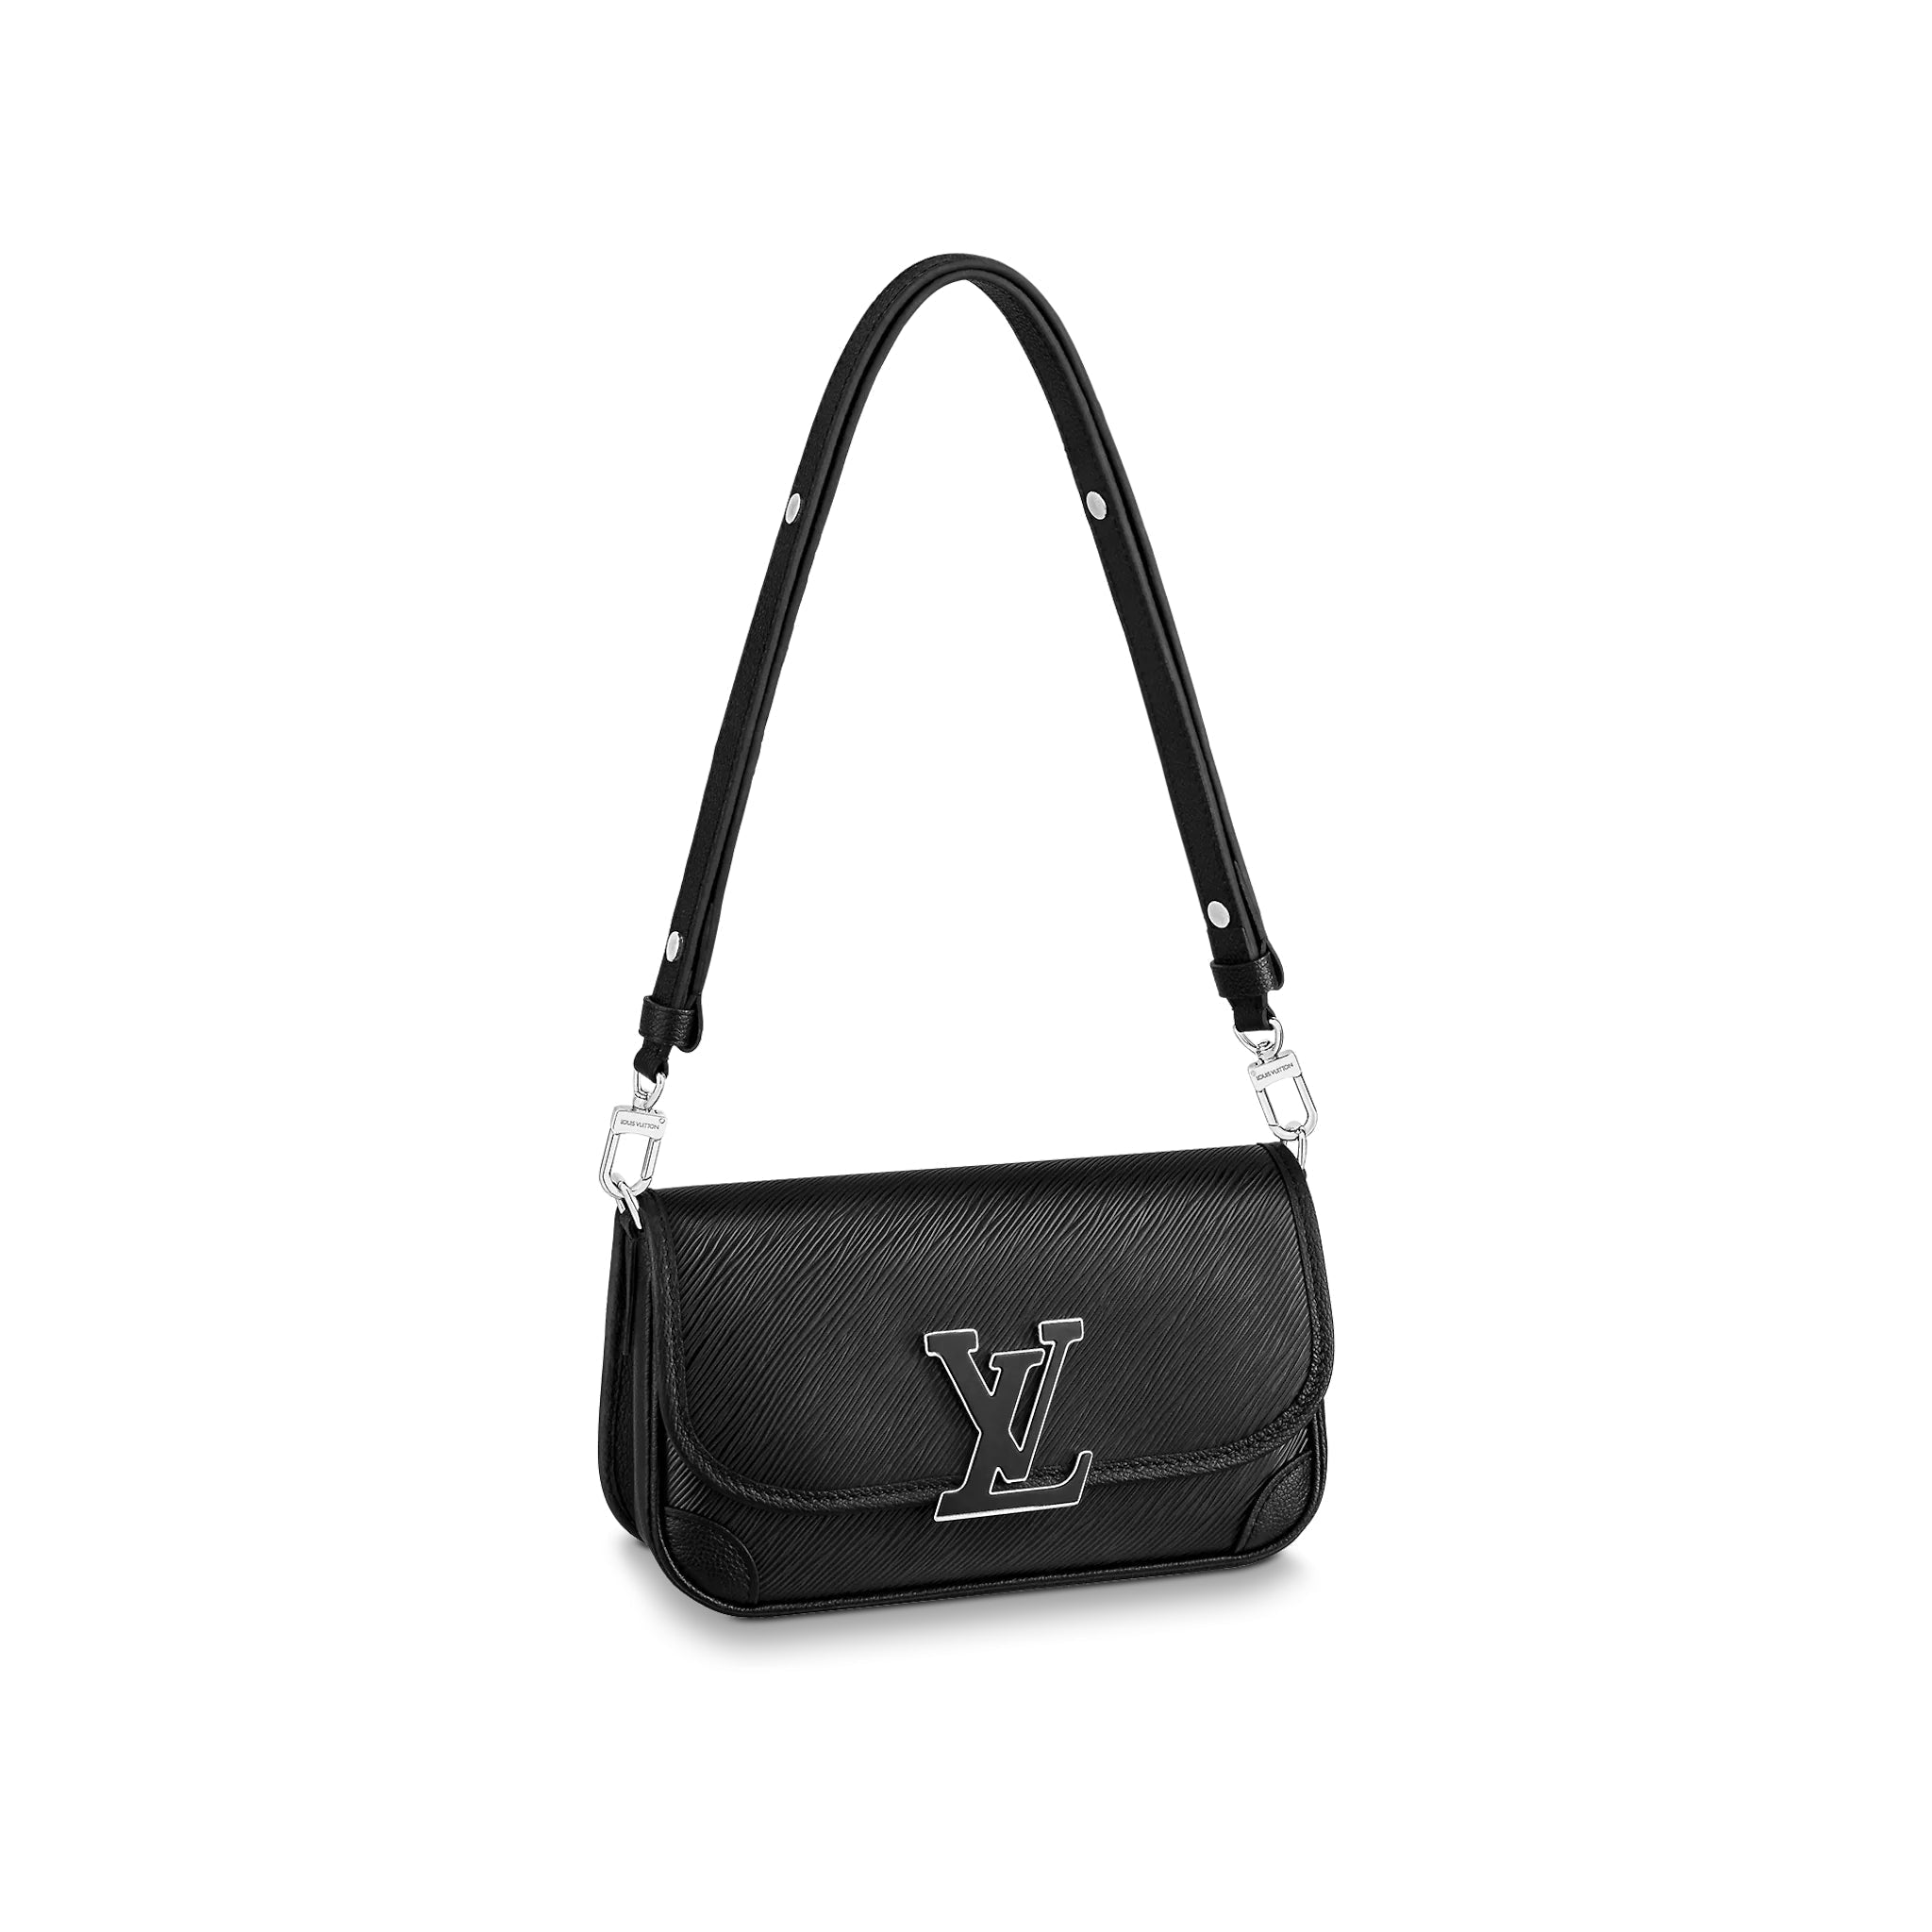 Authentic Louis Vuitton BUCI shoulder, crossbody, clutch bag